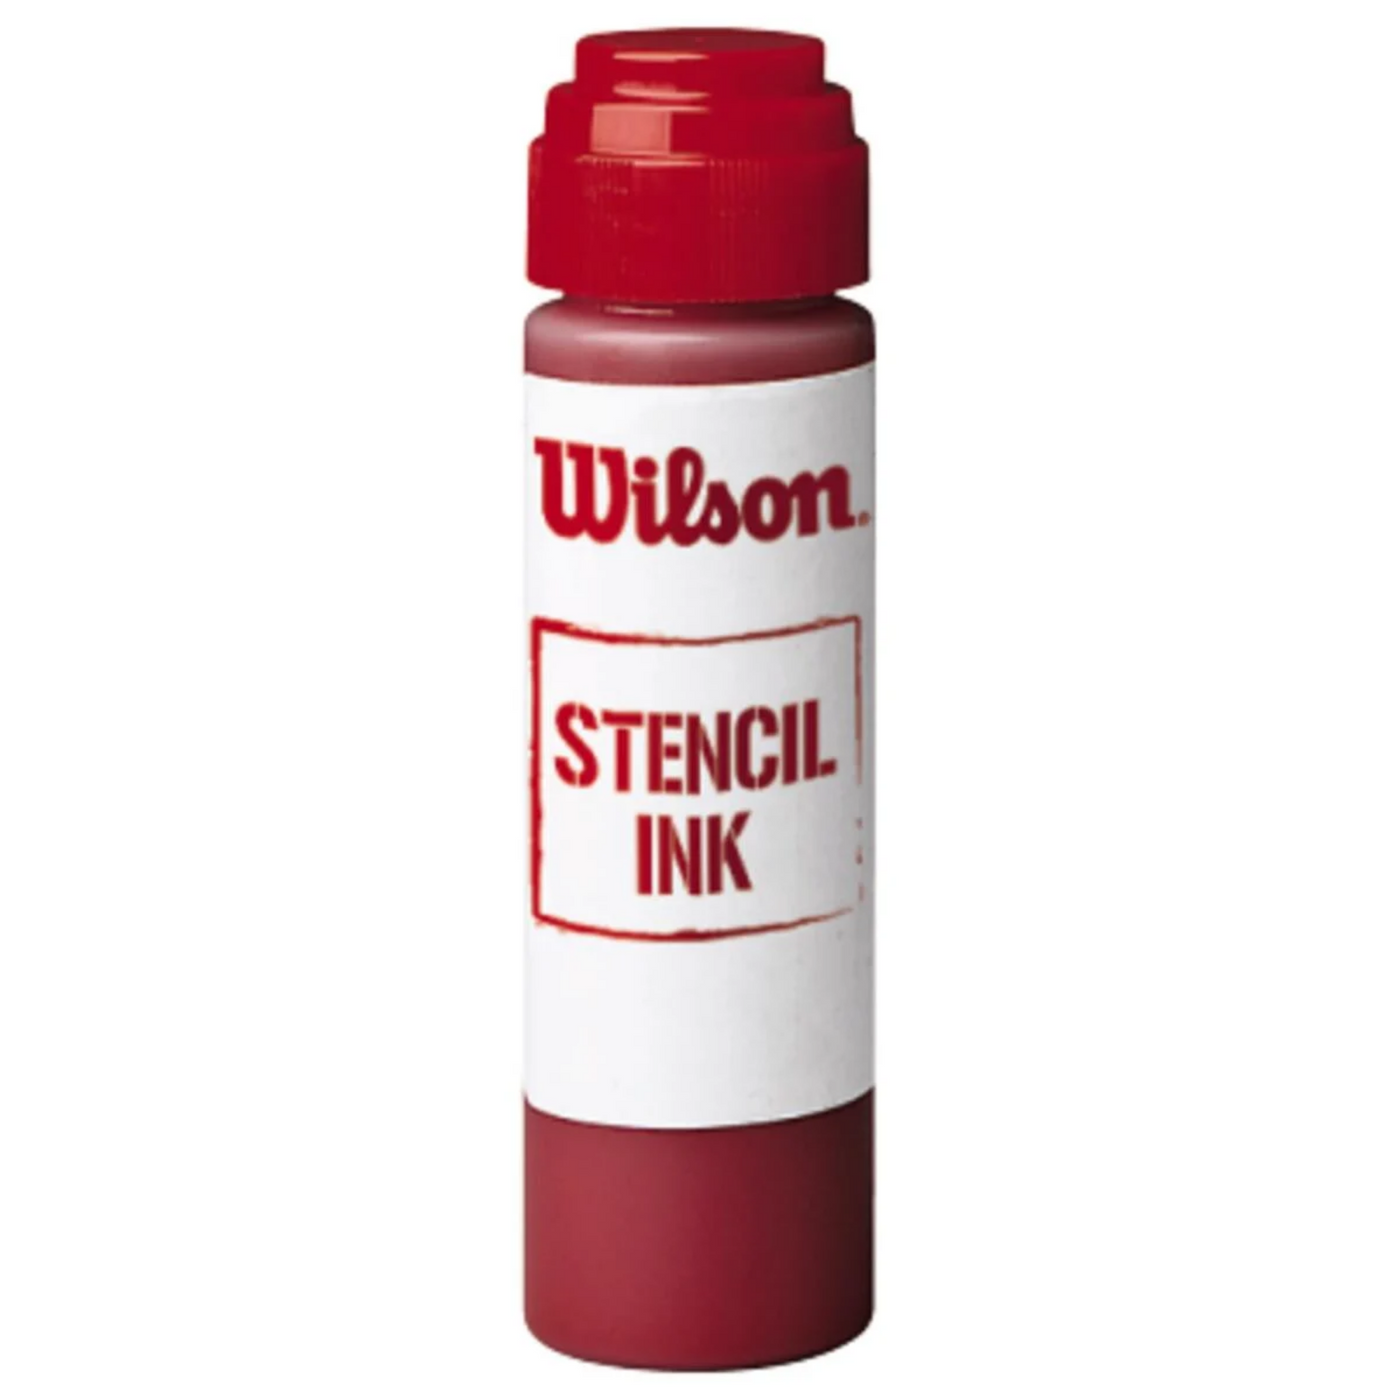 Wilson Regular Stencil Ink - Red